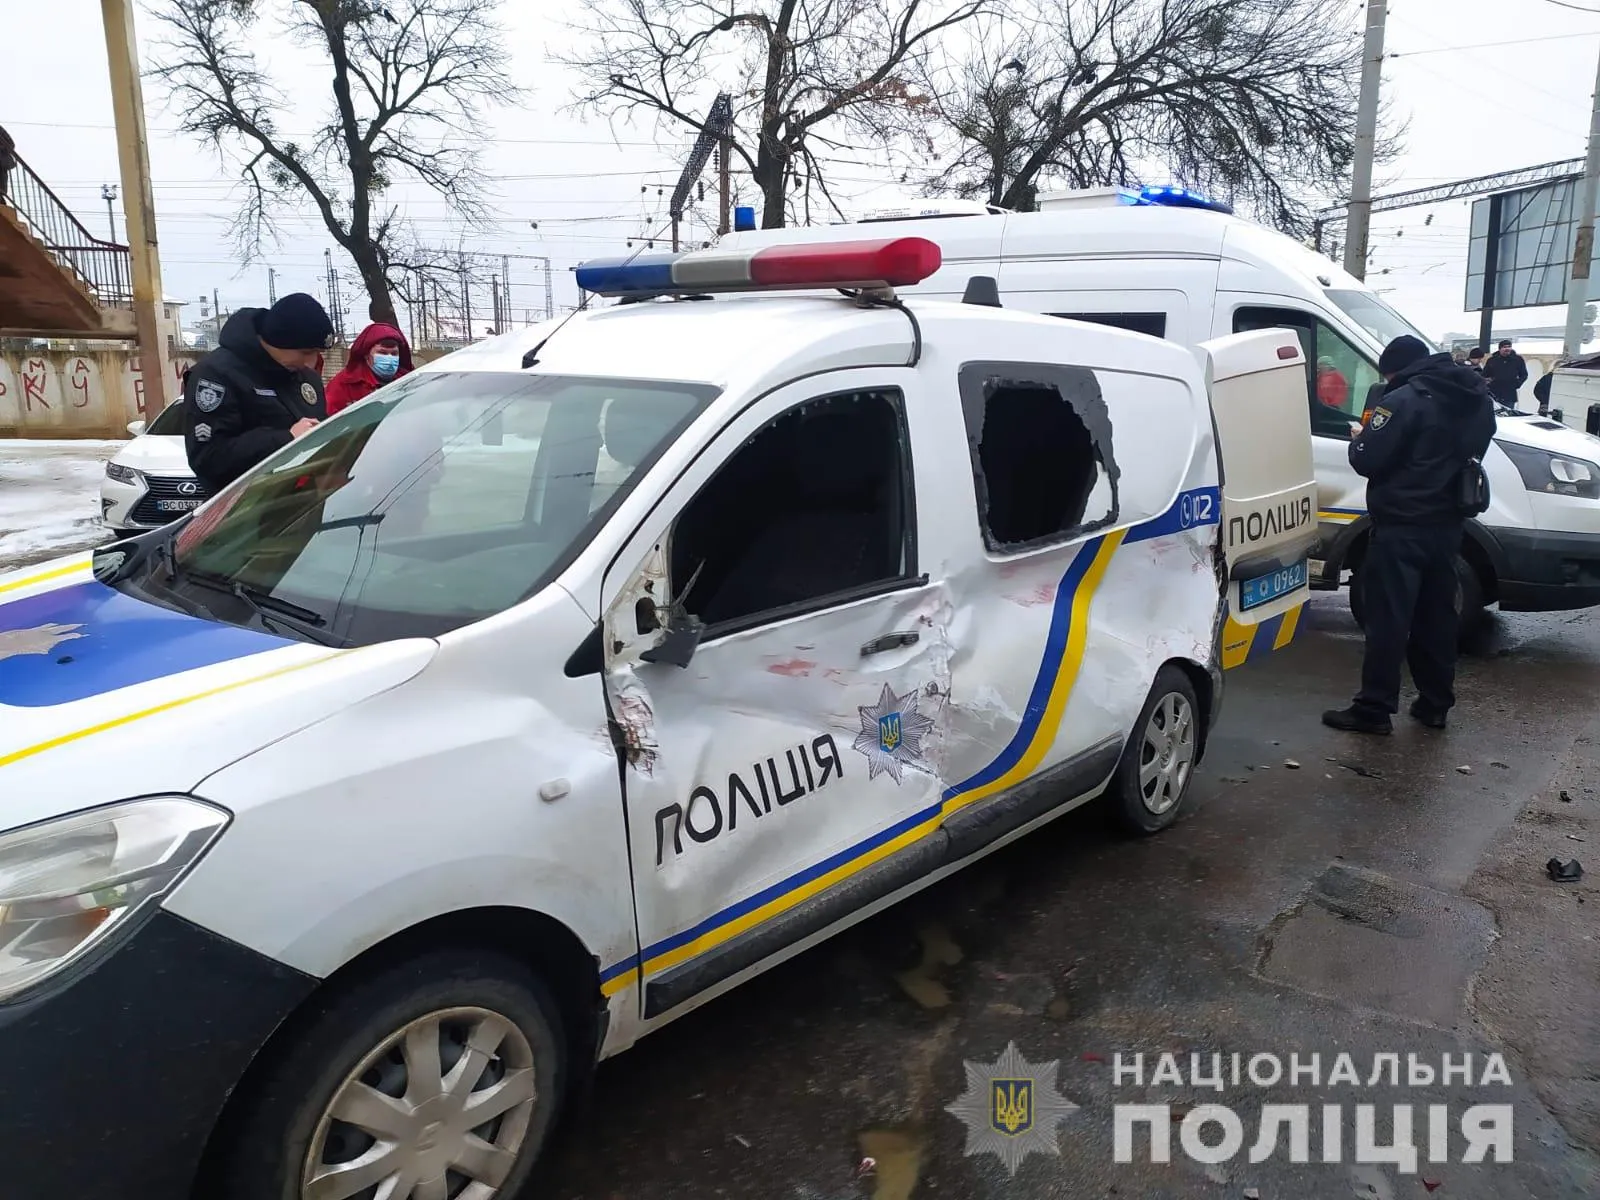 Постраждали 7 людей: у поліції розповіли деталі масштабної ДТП зі службовим авто у Львові